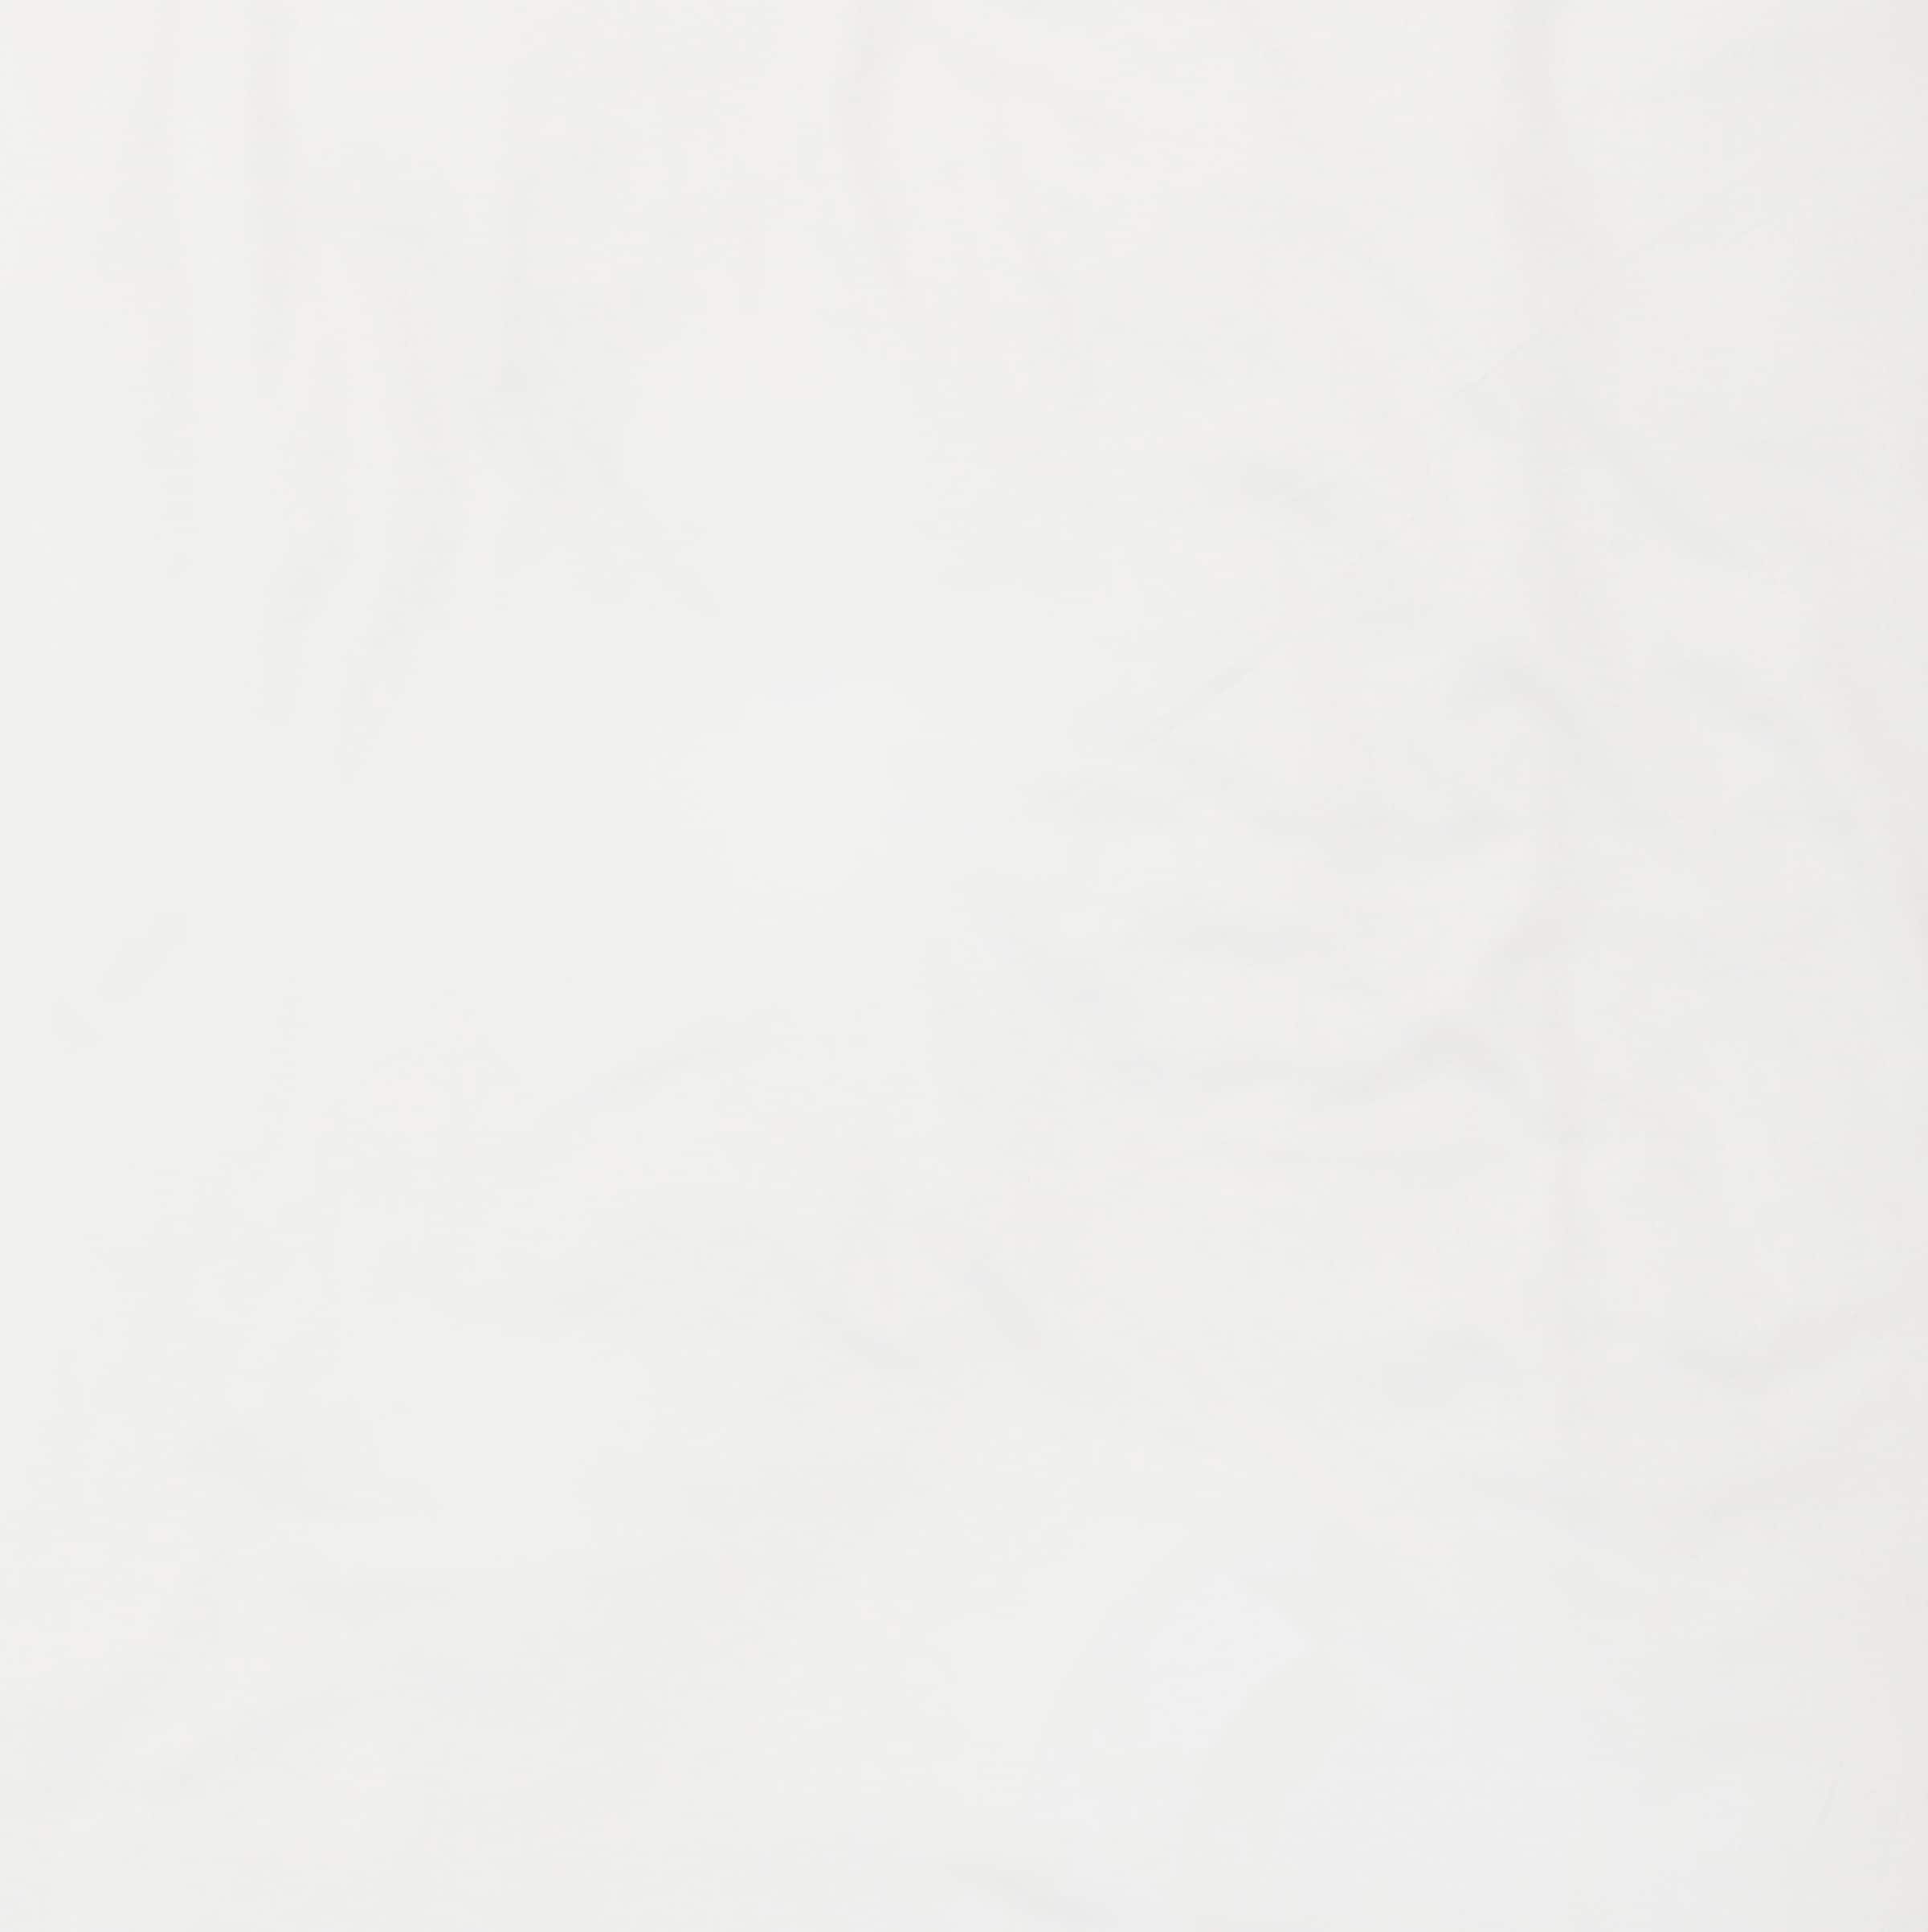 SCHÖNER WOHNEN-Kollektion Bettwäsche »Pure in Gr. 135x200, 155x220 oder 200x200 cm«, (2 tlg.), Bettwäsche aus Baumwolle in Satin-Qualität, unifarbene Bettwäsche